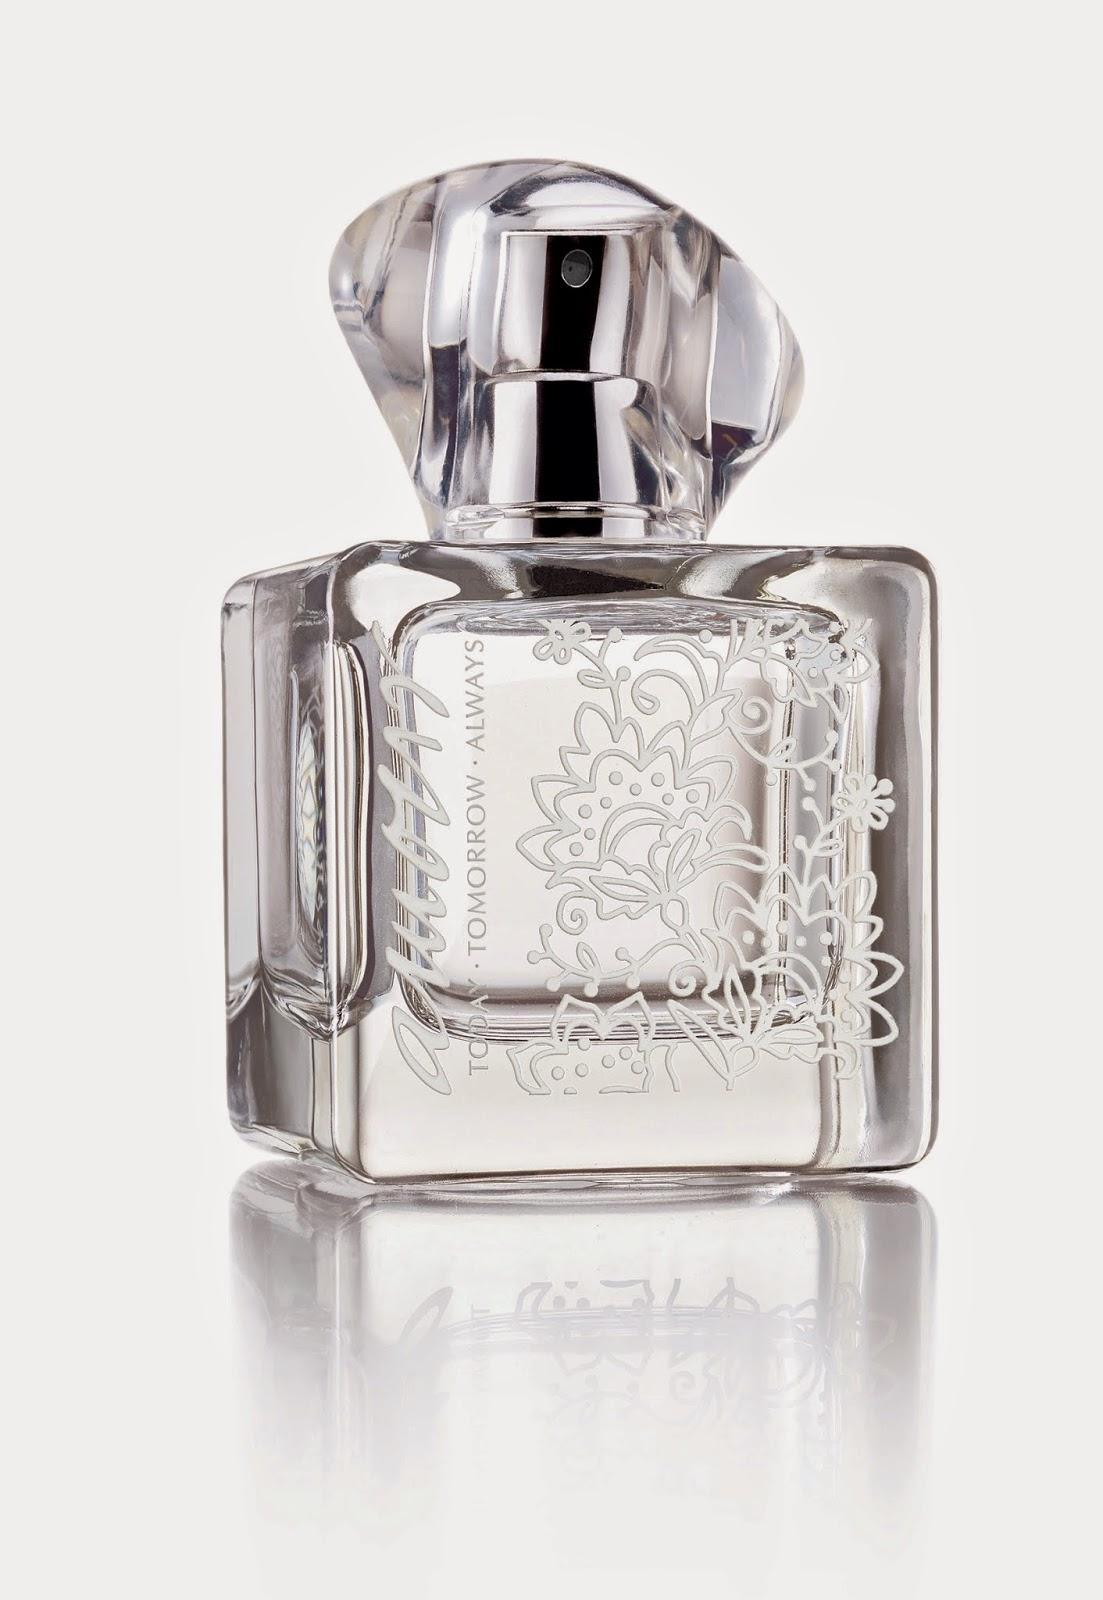 Avon Perfumes Today tomorrow always amour avon perfume - REYJEWISH ...